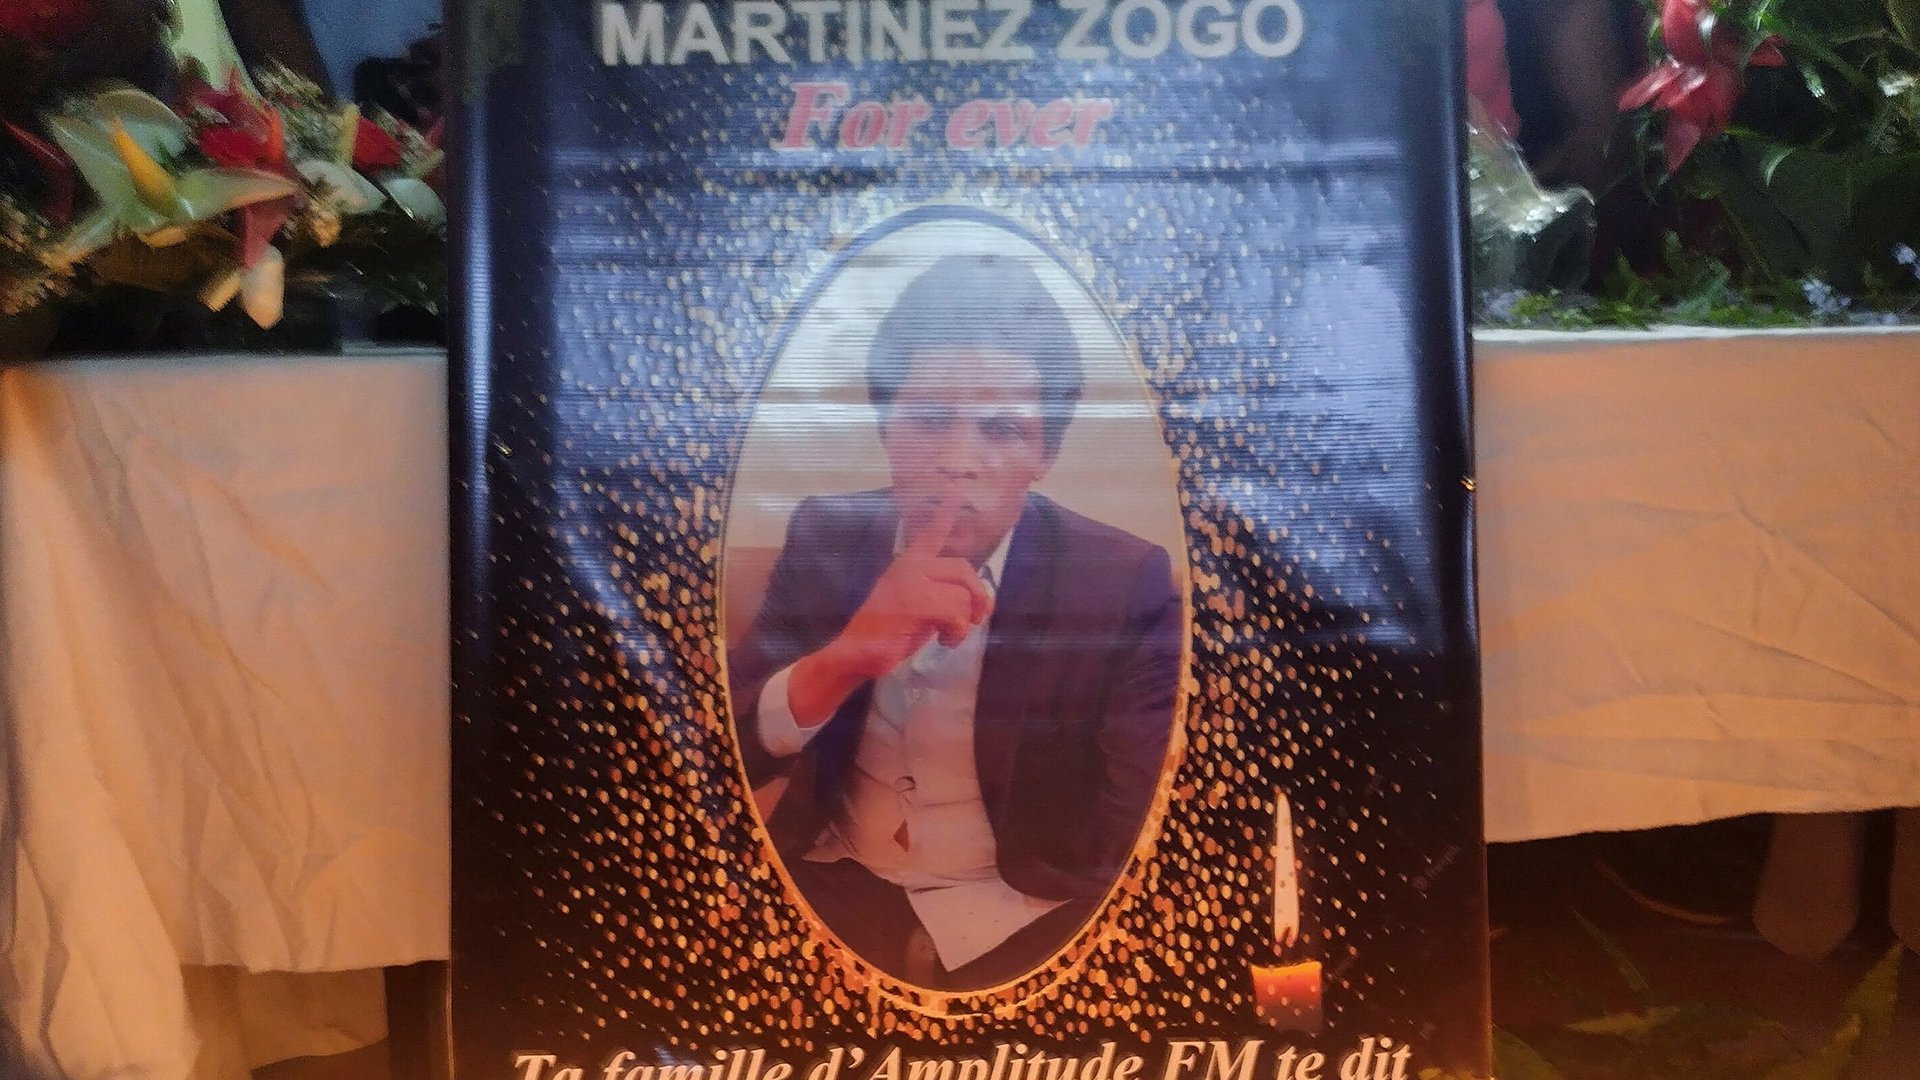 Un portrait du défunt journaliste Martinez Zogo. © AMINDEH BLAISE ATABONG/REUTERS